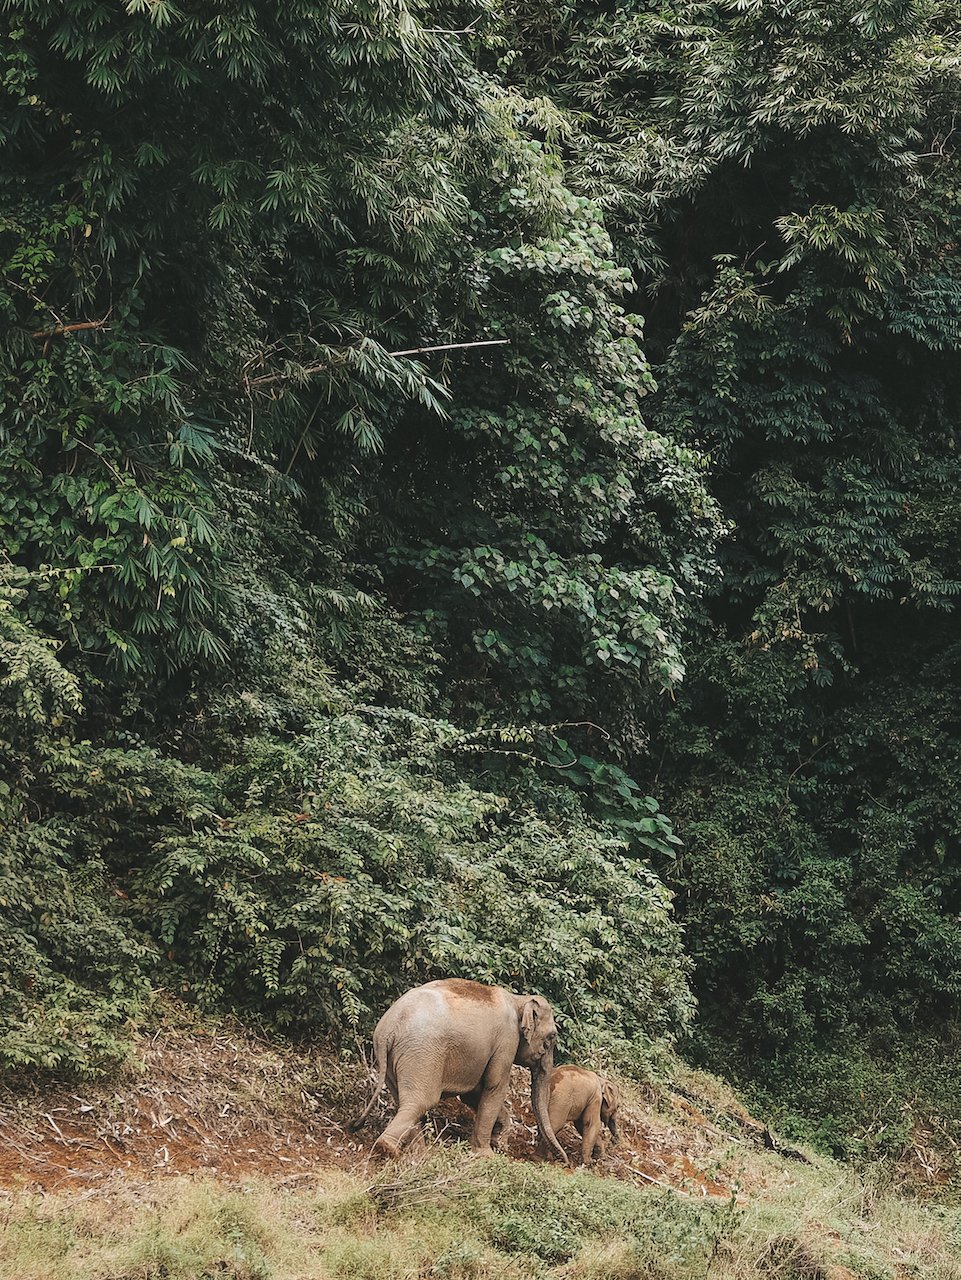 Des éléphants dans la jungle - Parc national de Khao Sok - Thaïlande